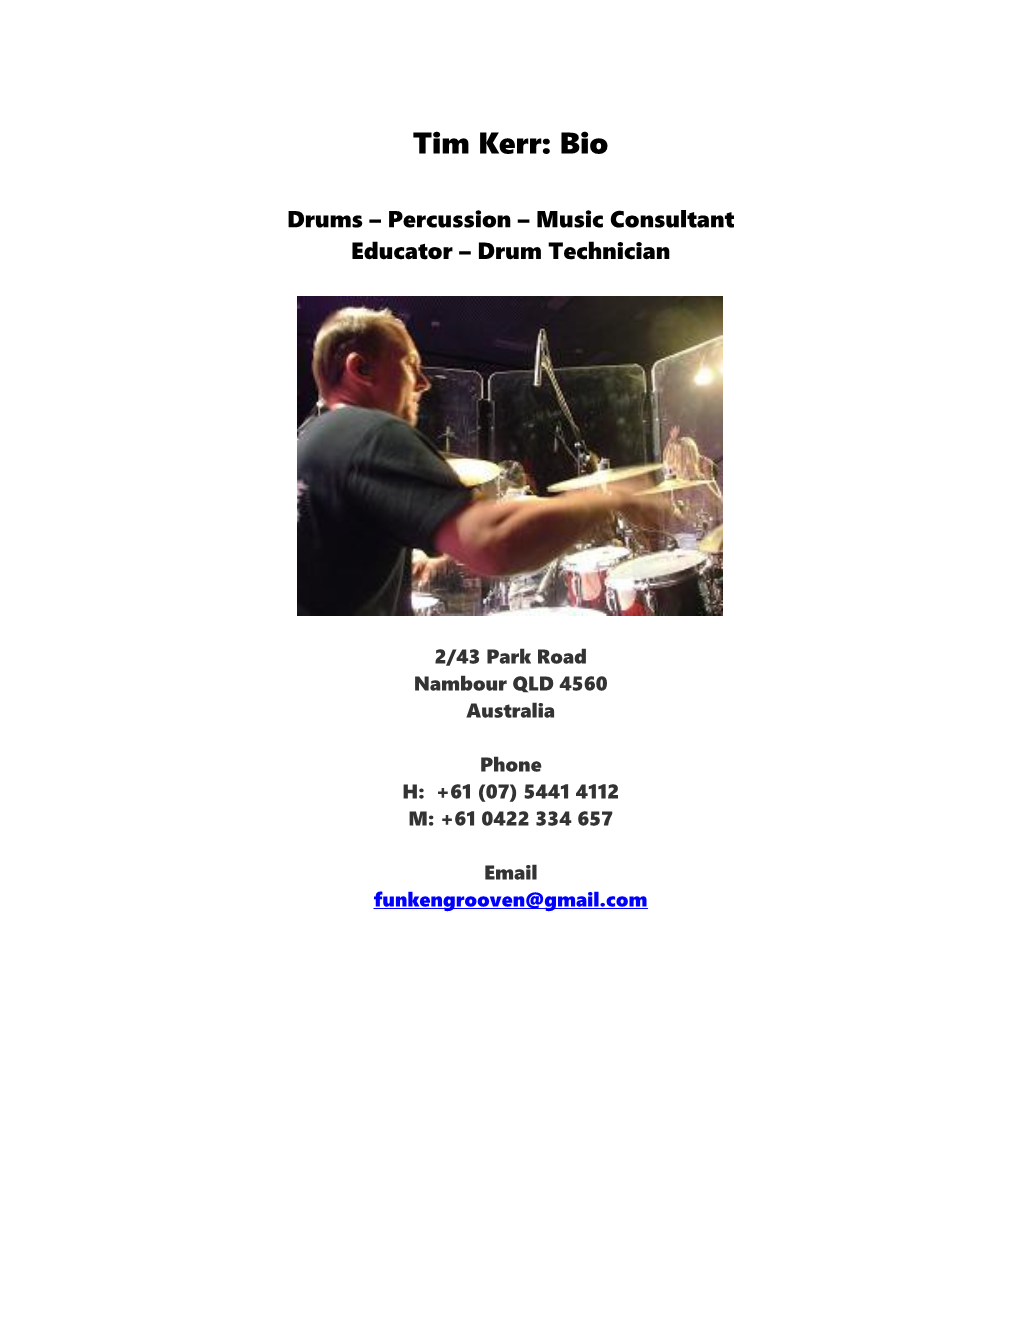 Professional Bio Druns & Percussion - Tim Kerr